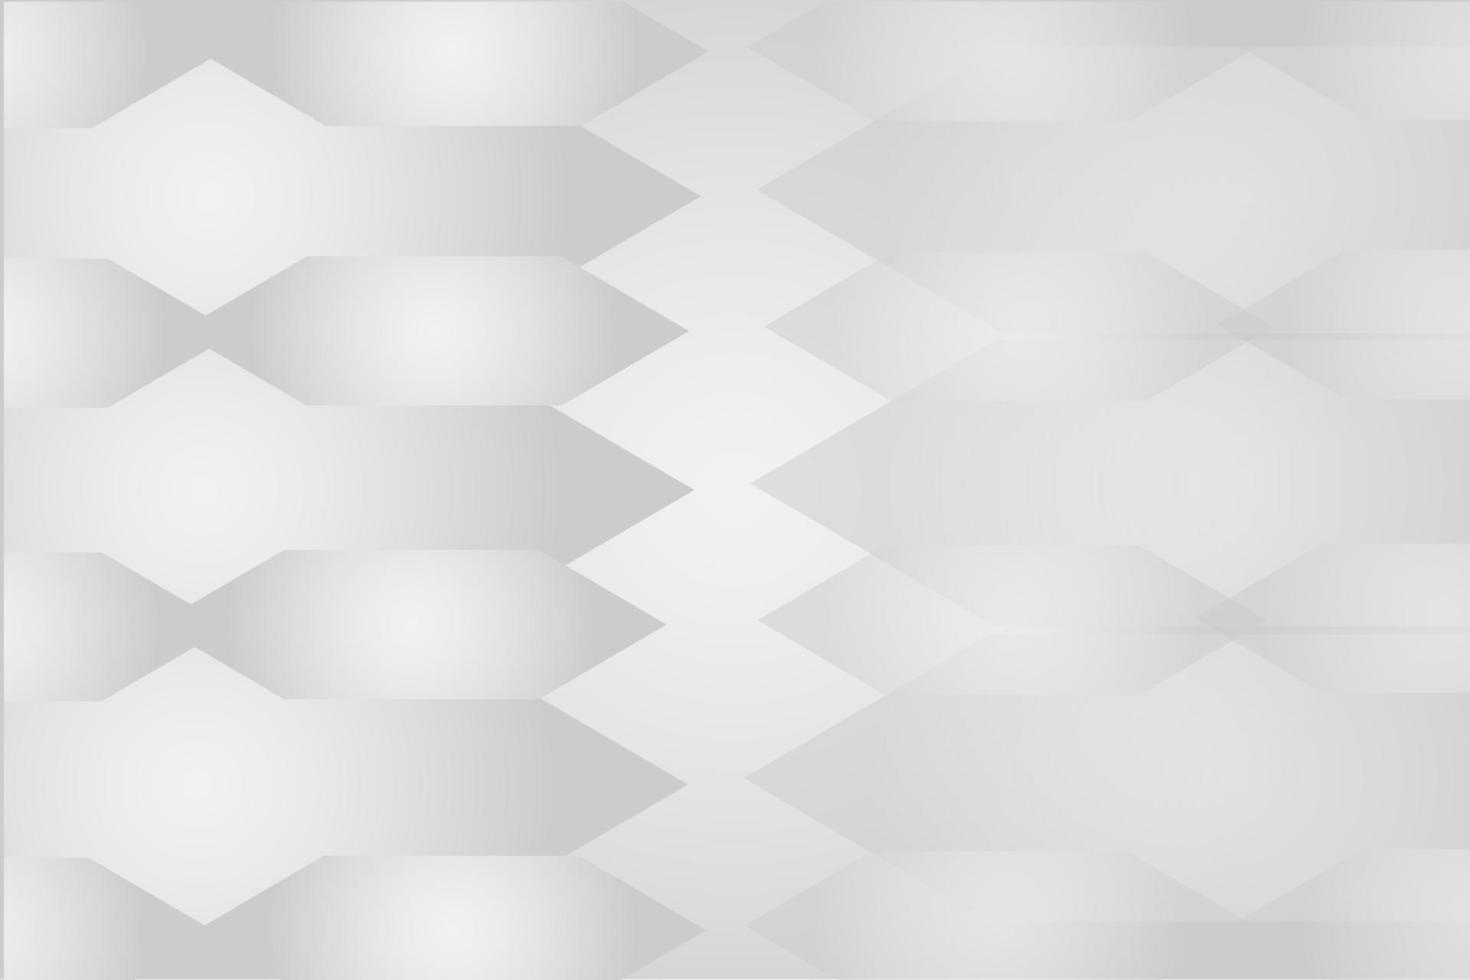 sfondo bianco astratto con design moderno grigio vettore